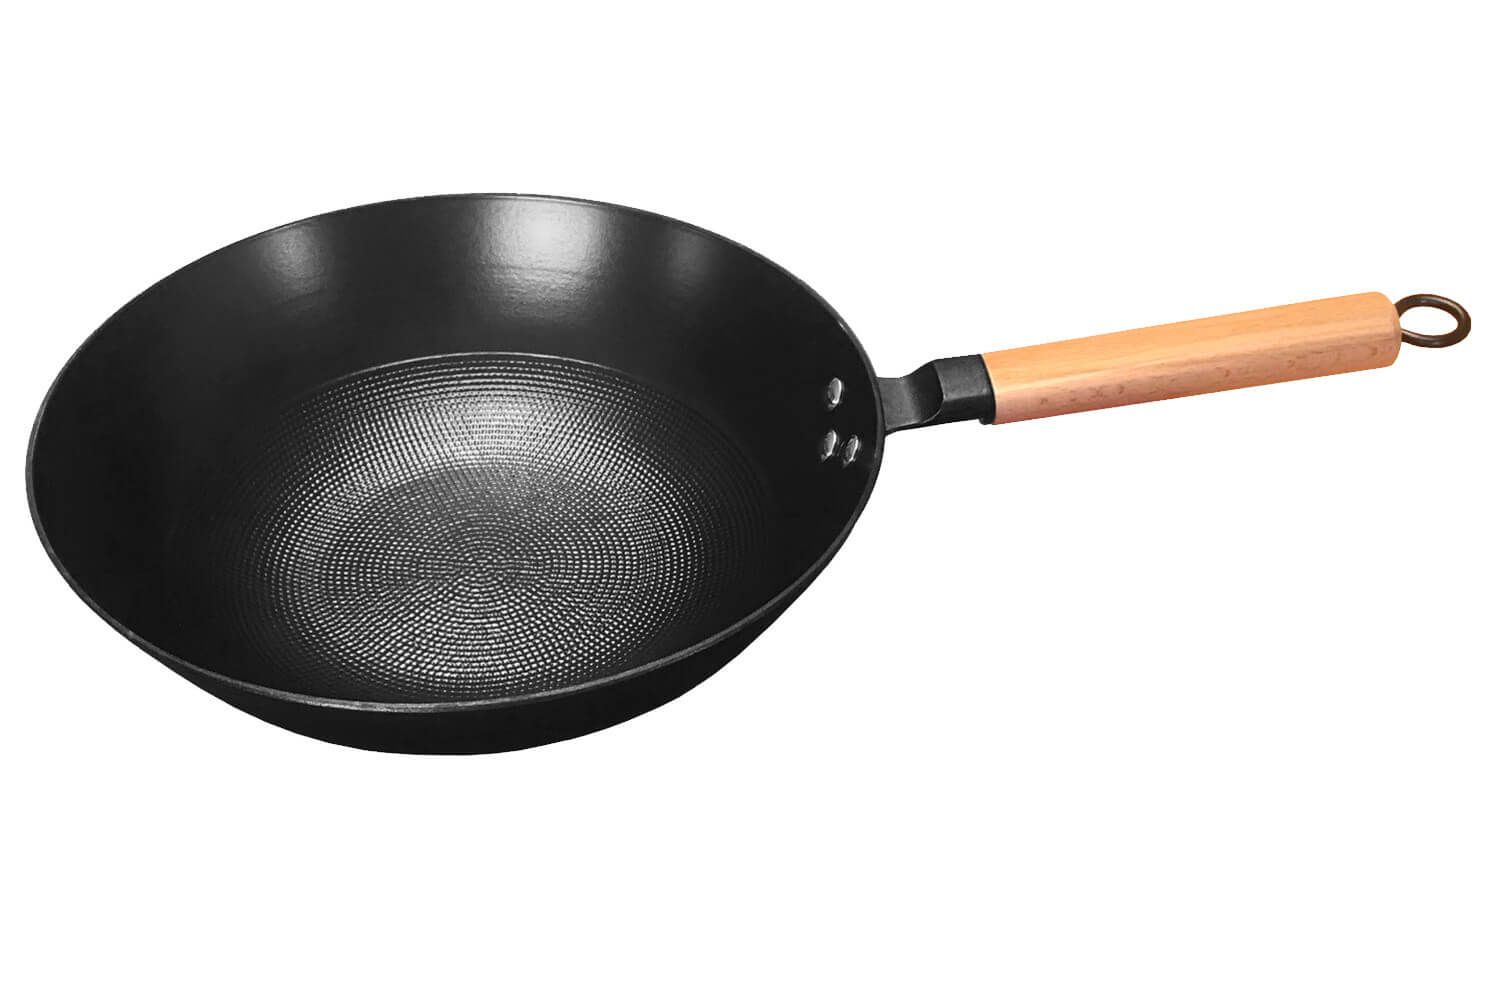 Poêle wok en fonte avec couvercle en bois – CUISAMIX